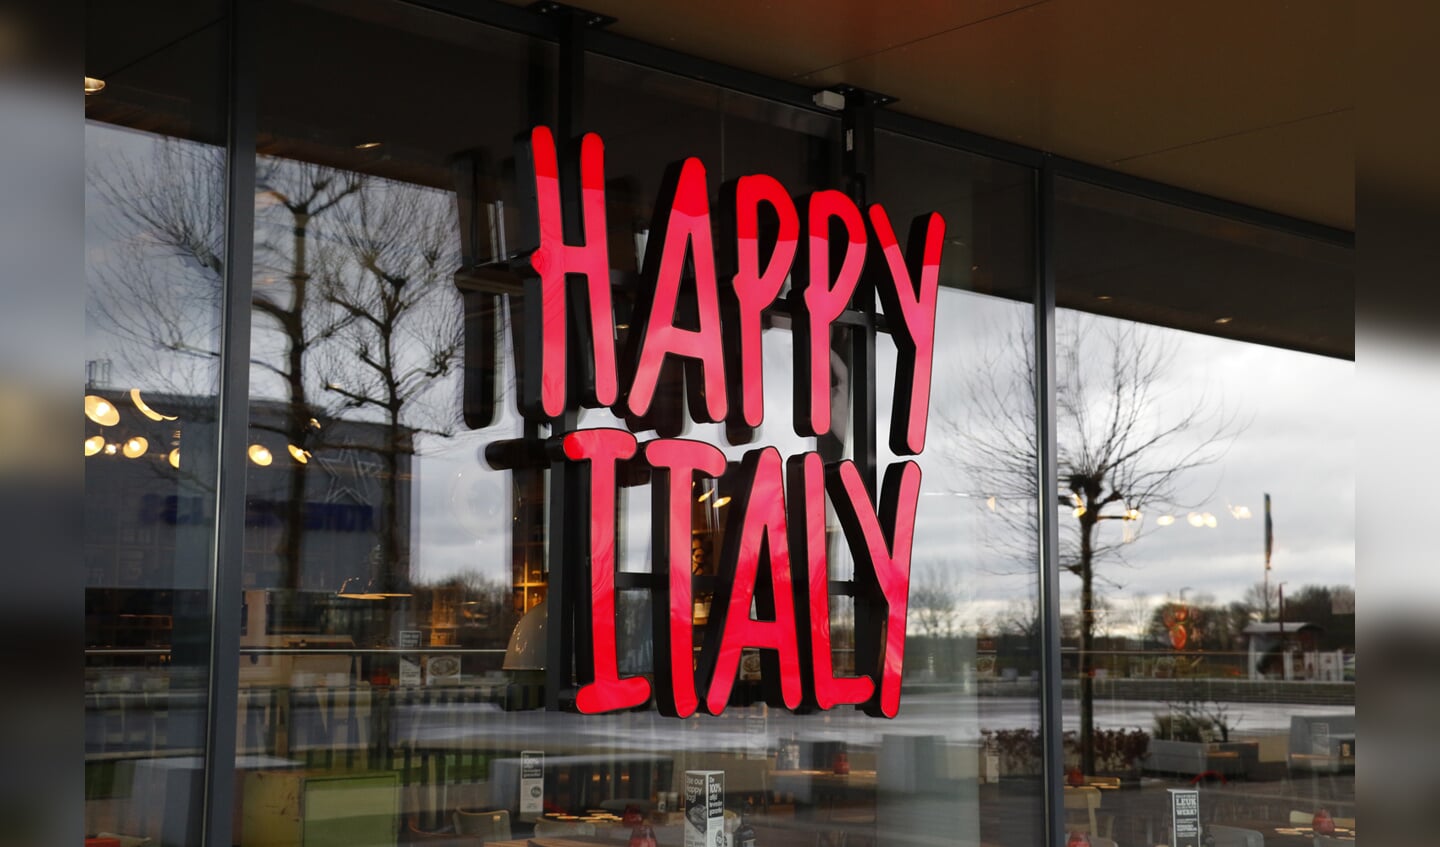 Een sneak preview kort voor de opening van de grootste Happy Italy van Nederland in Breda, bij Breepark.